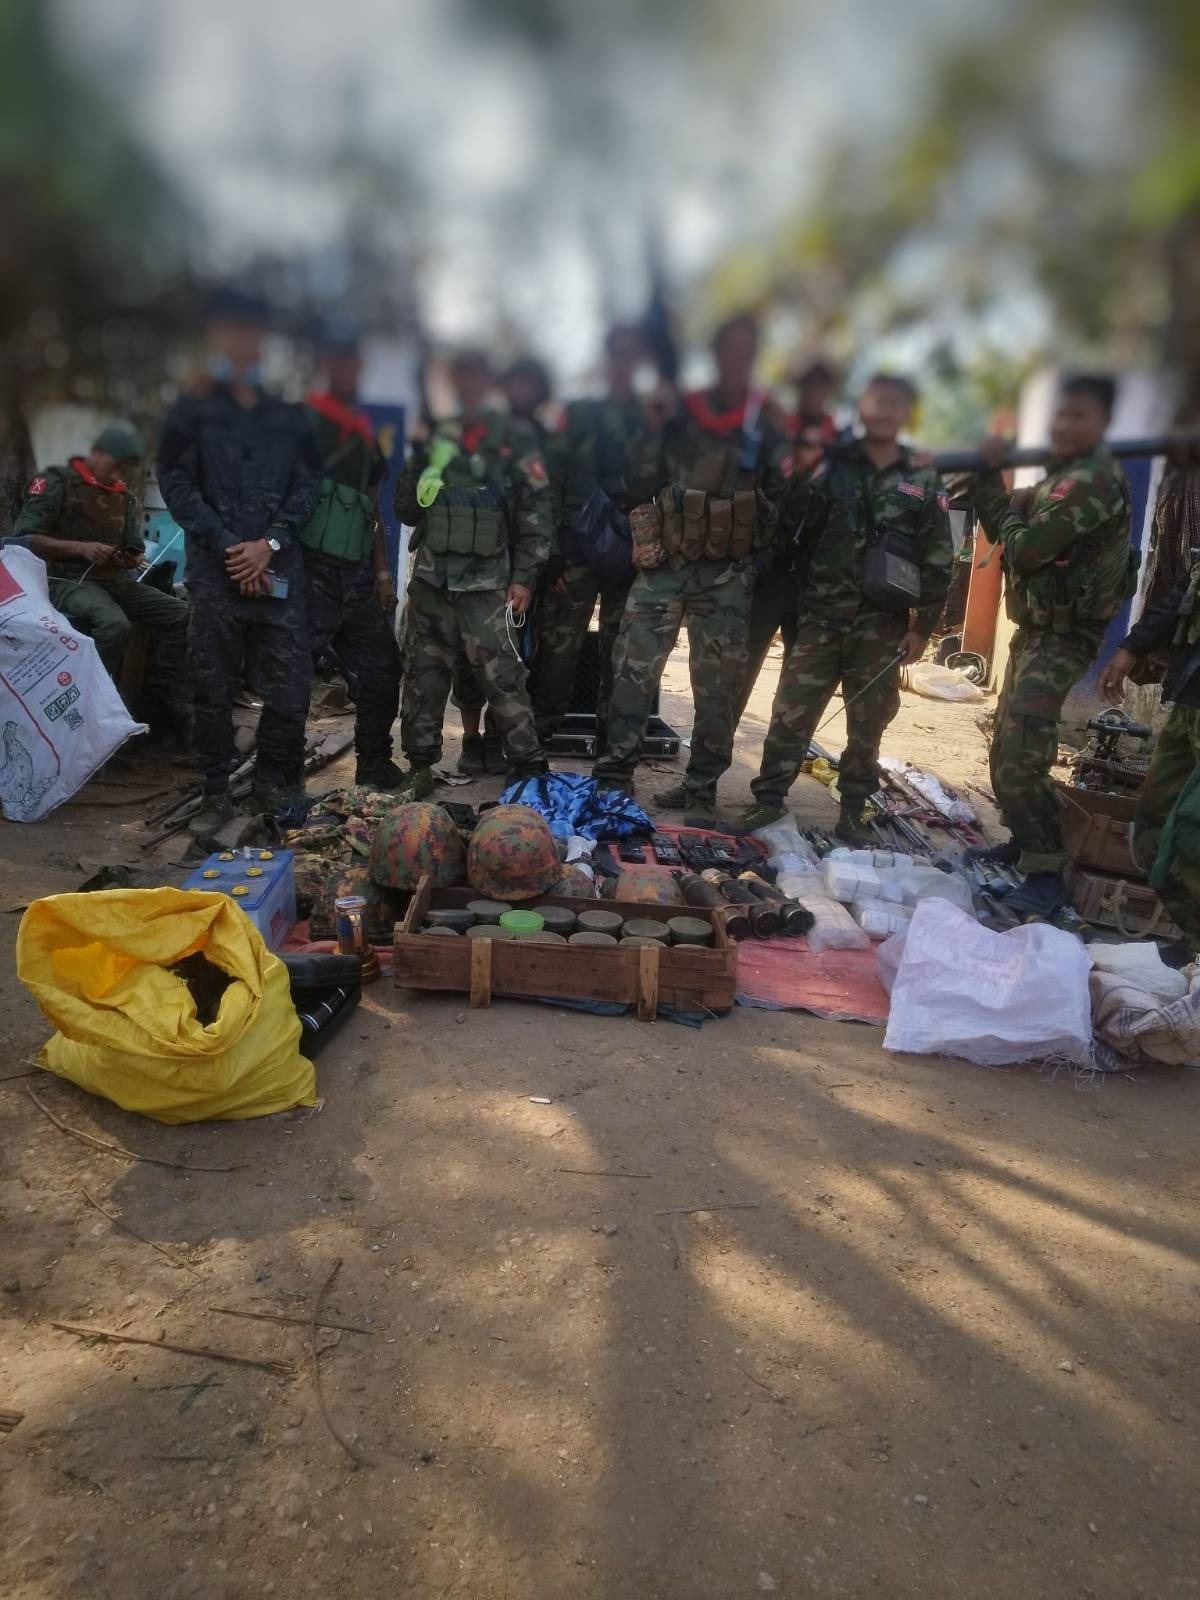 စစ်ကိုင်းနယ်စပ်အနီးက မဘိမ်းမြို့ကို ကာကွယ်ရေးတပ်ဖွဲ့တွေ သိမ်းပိုက်